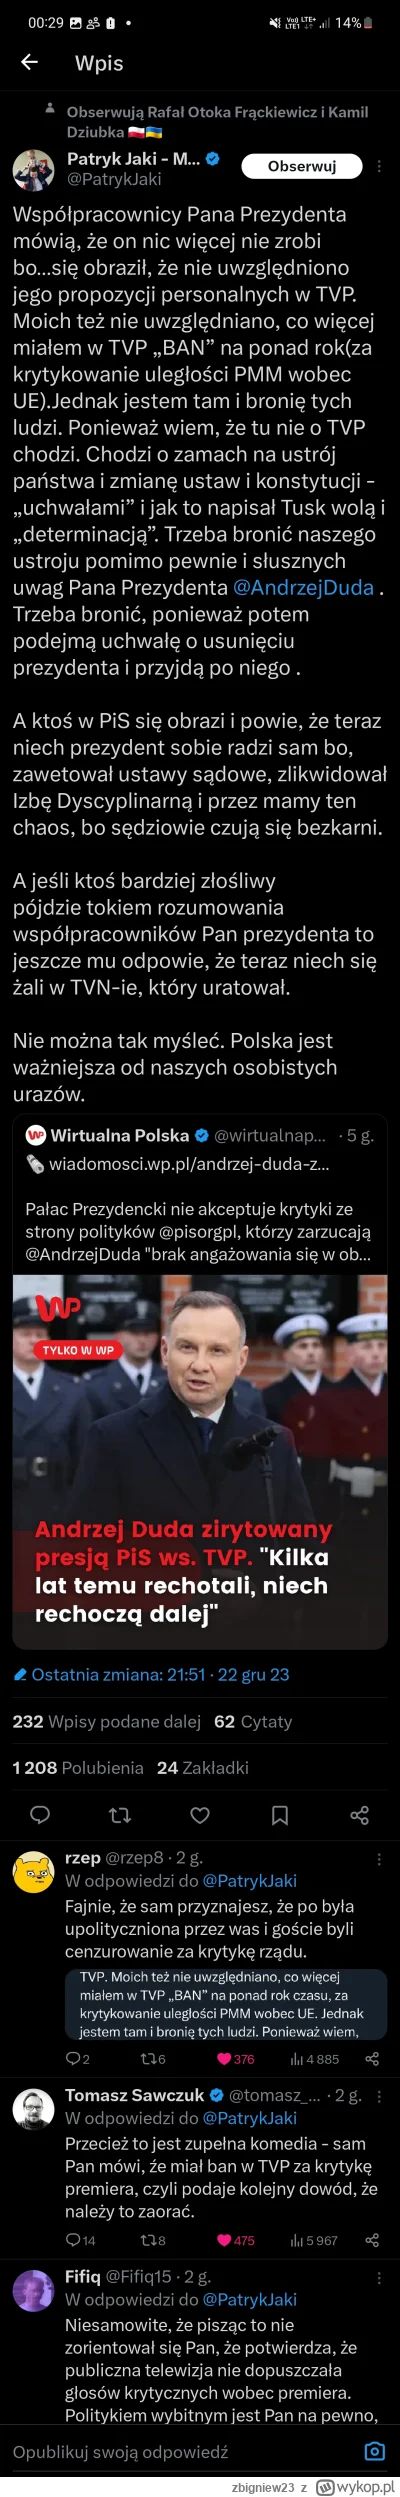 zbigniew23 - Patryk Jaki sam, przyznaje ze miał BANA w TVP za krytyke rządu Morawieck...